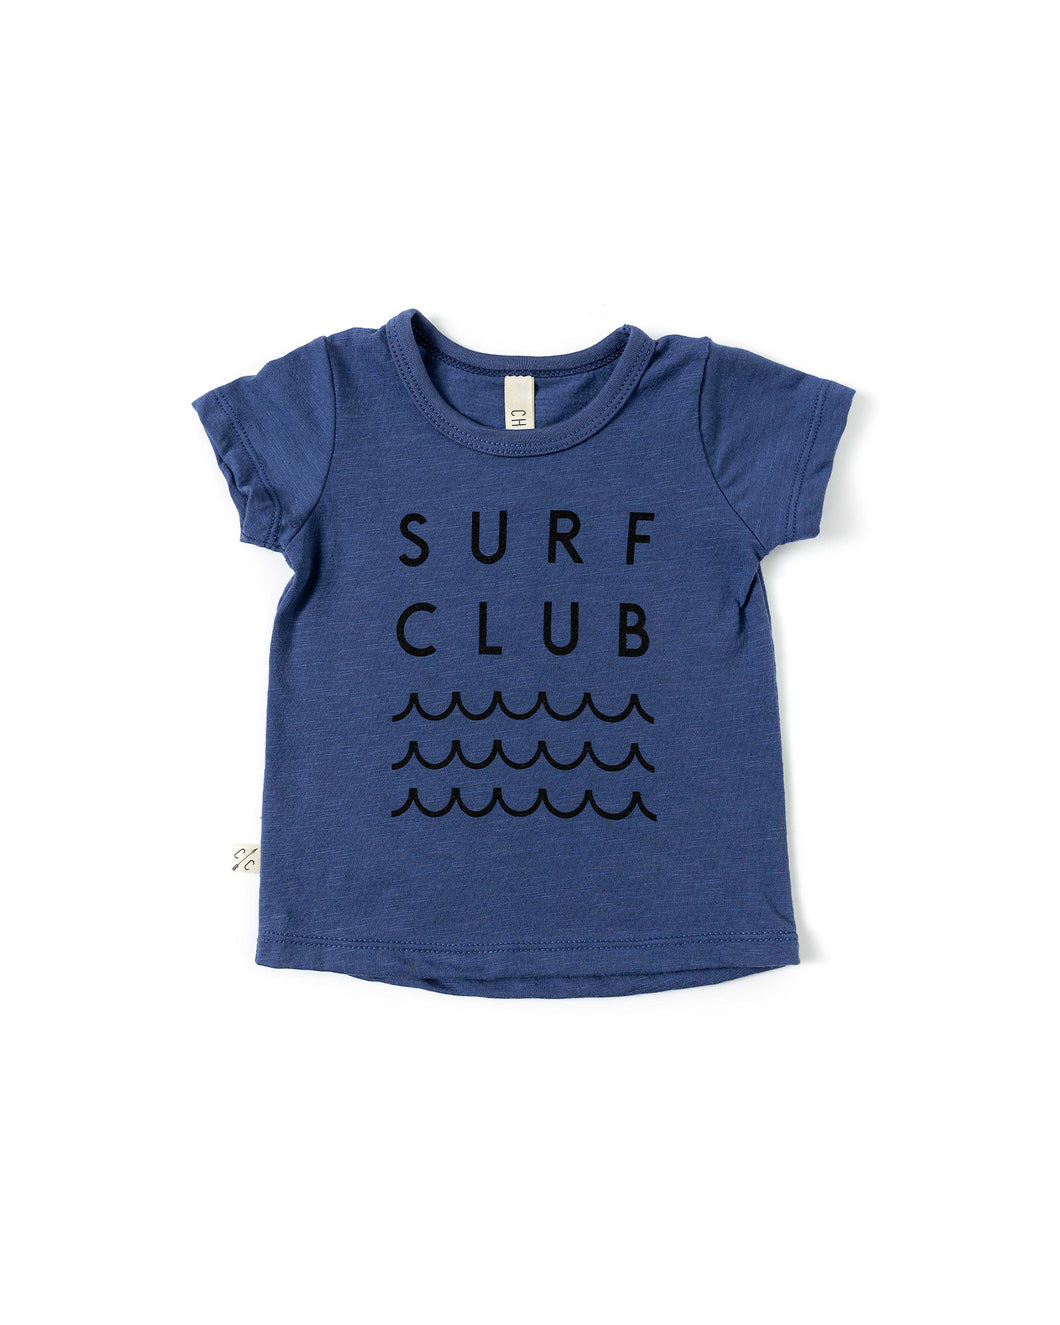 basic tee - surf club on ink blue